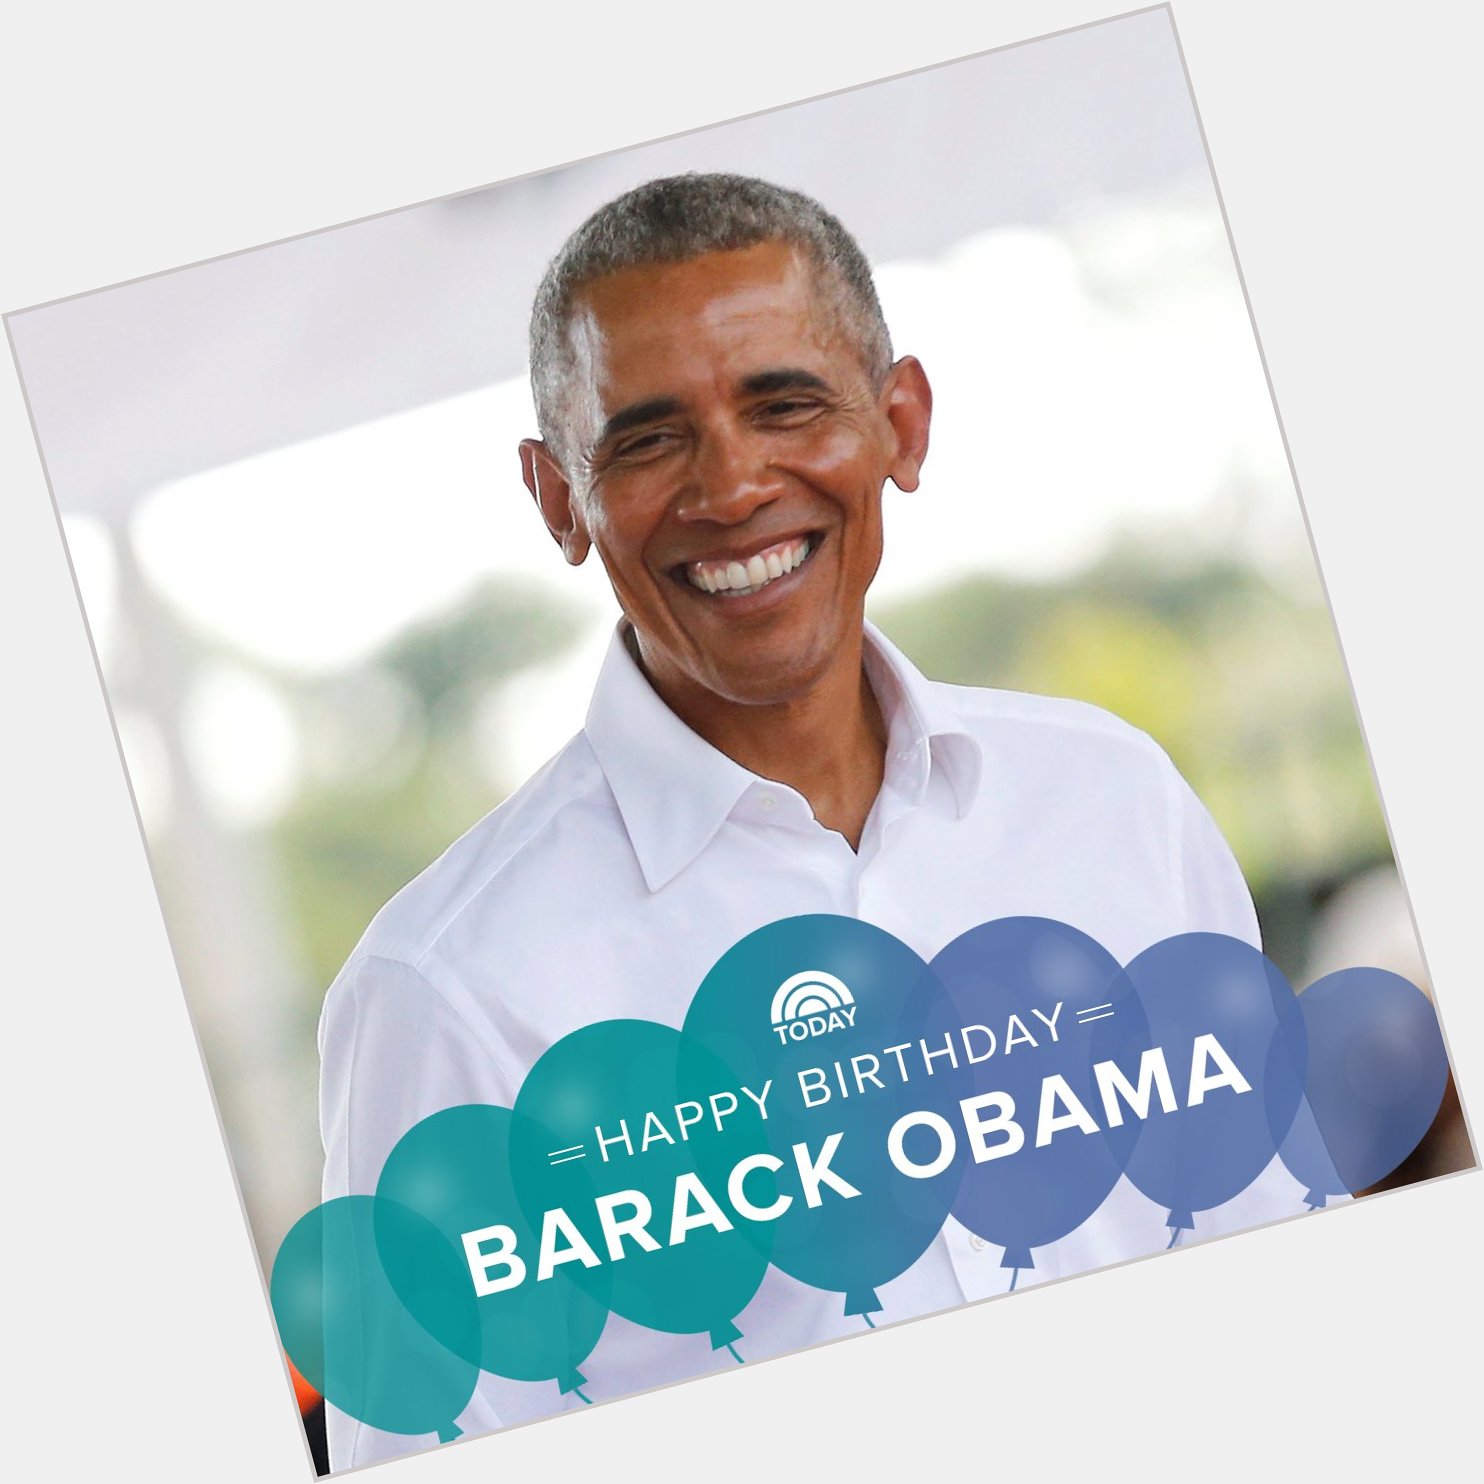 Happy birthday to former President Barack Obama!  